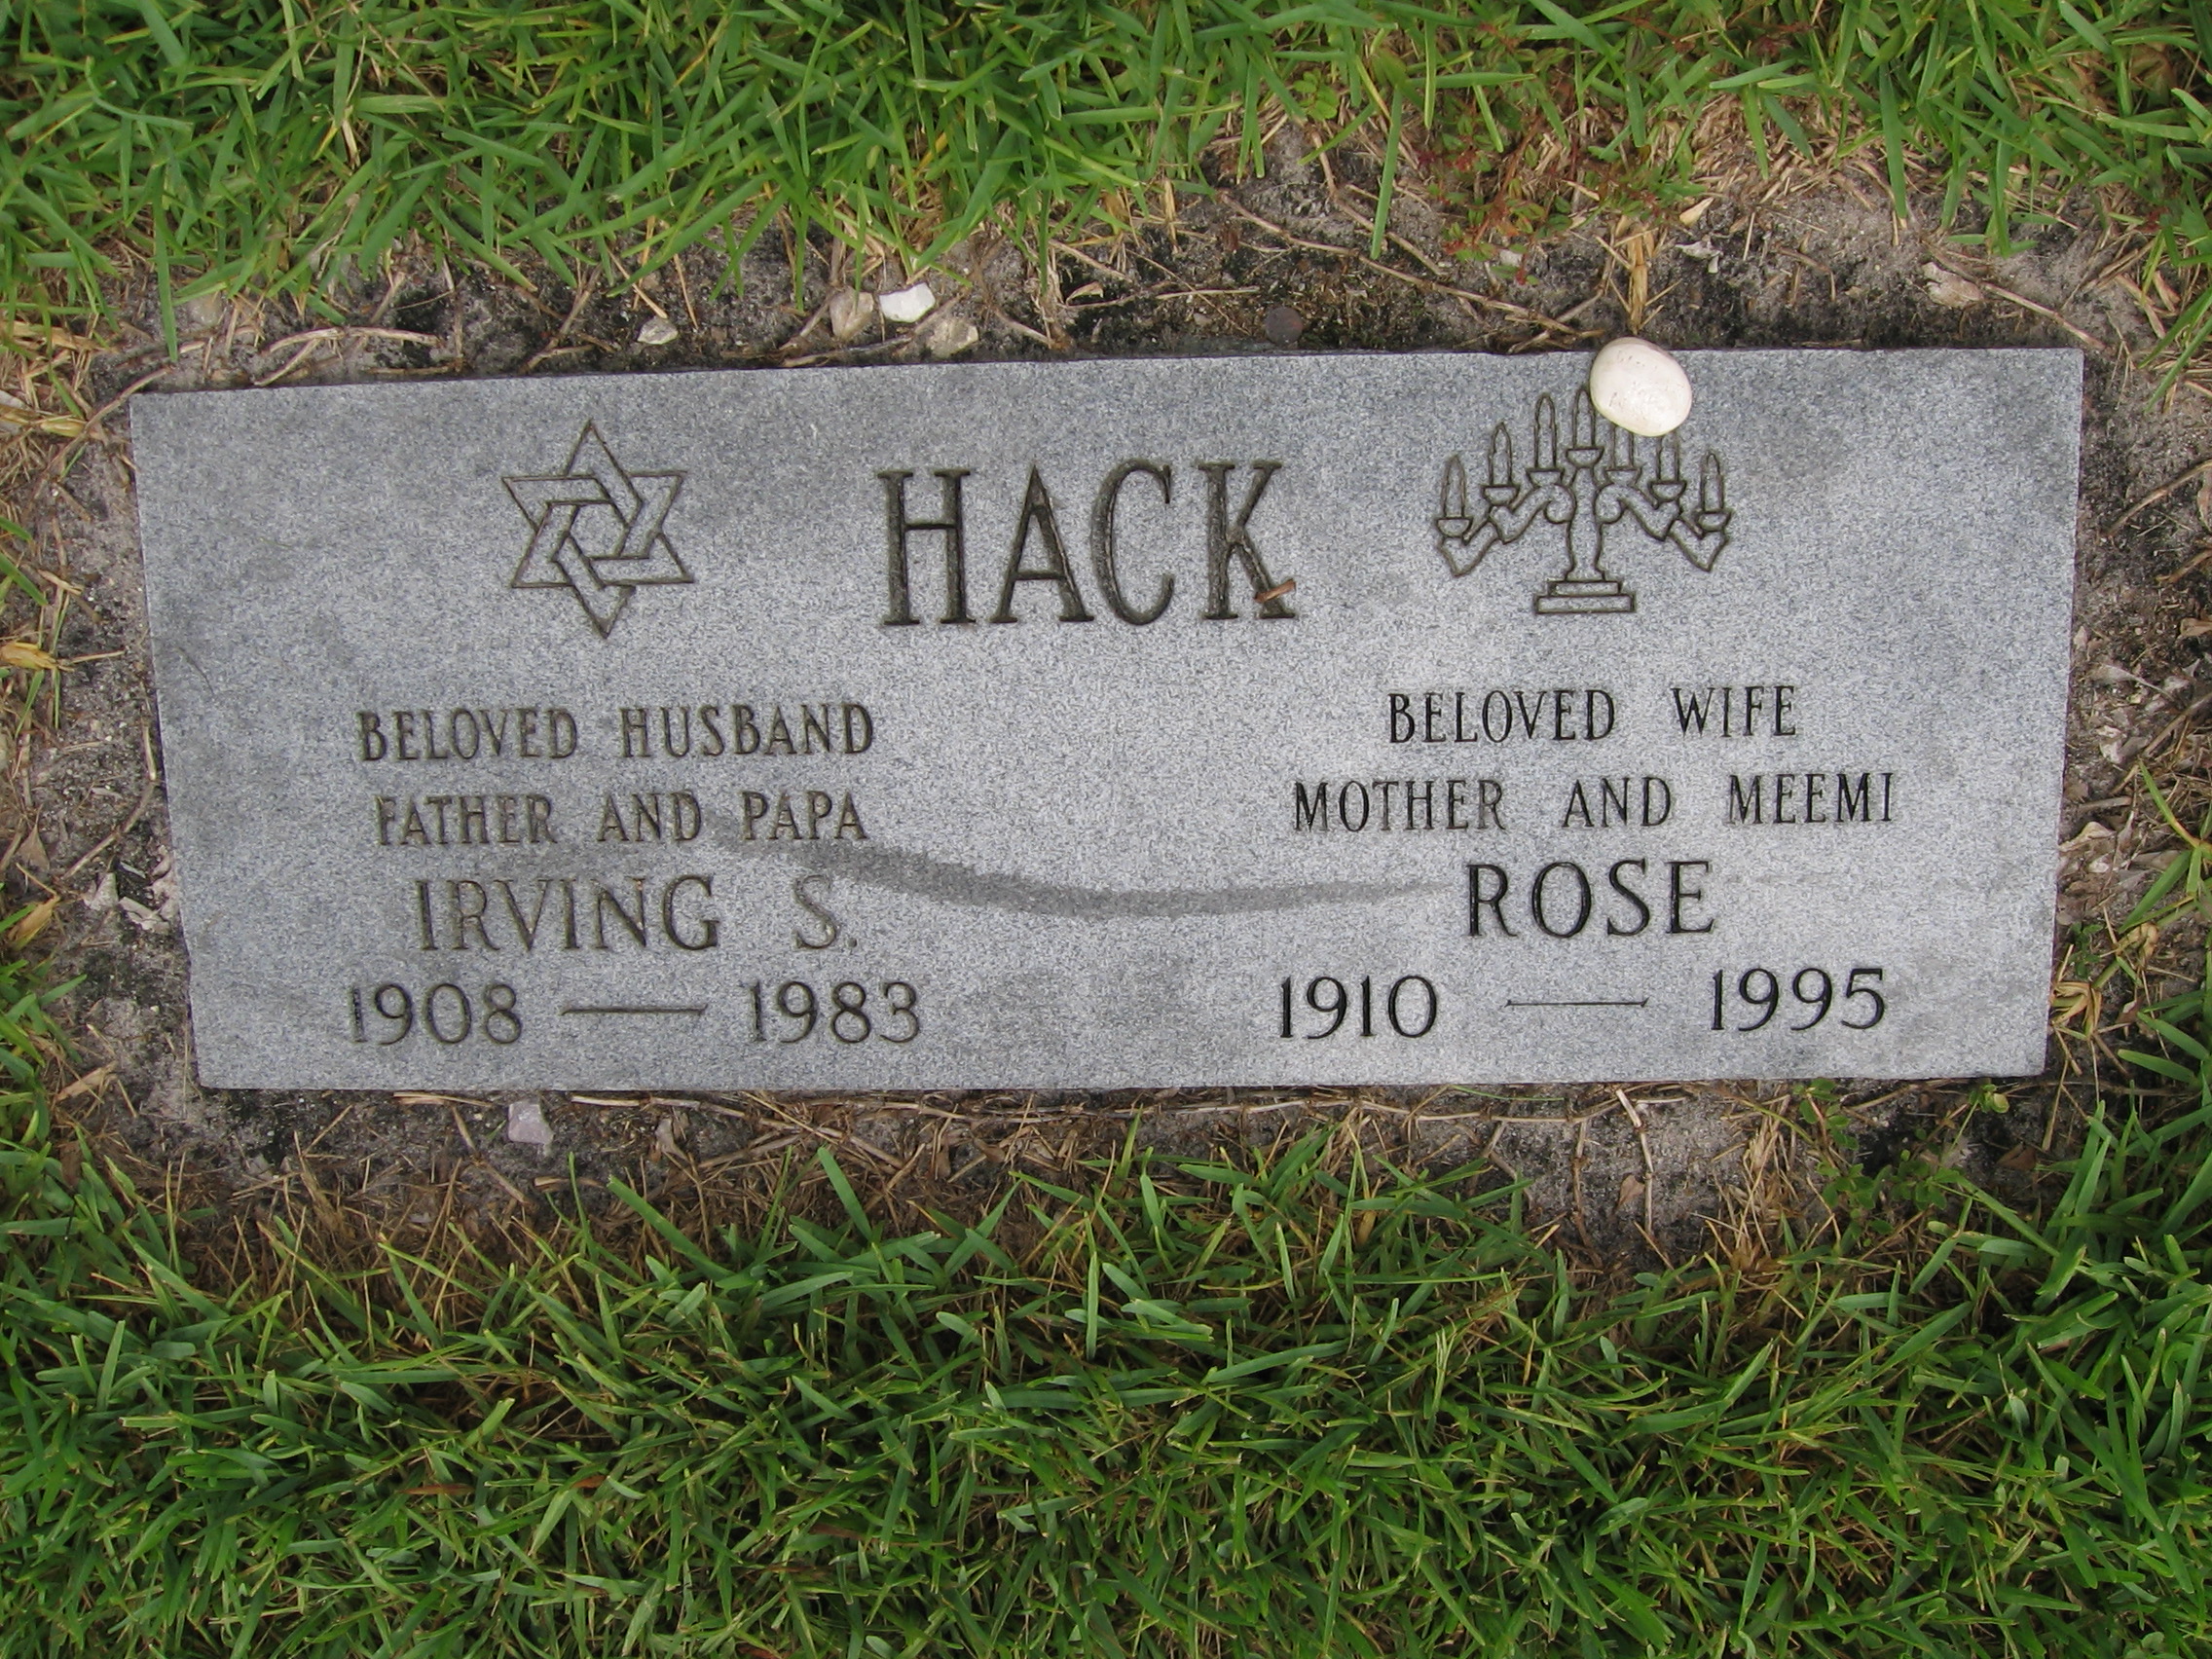 Rose Hack